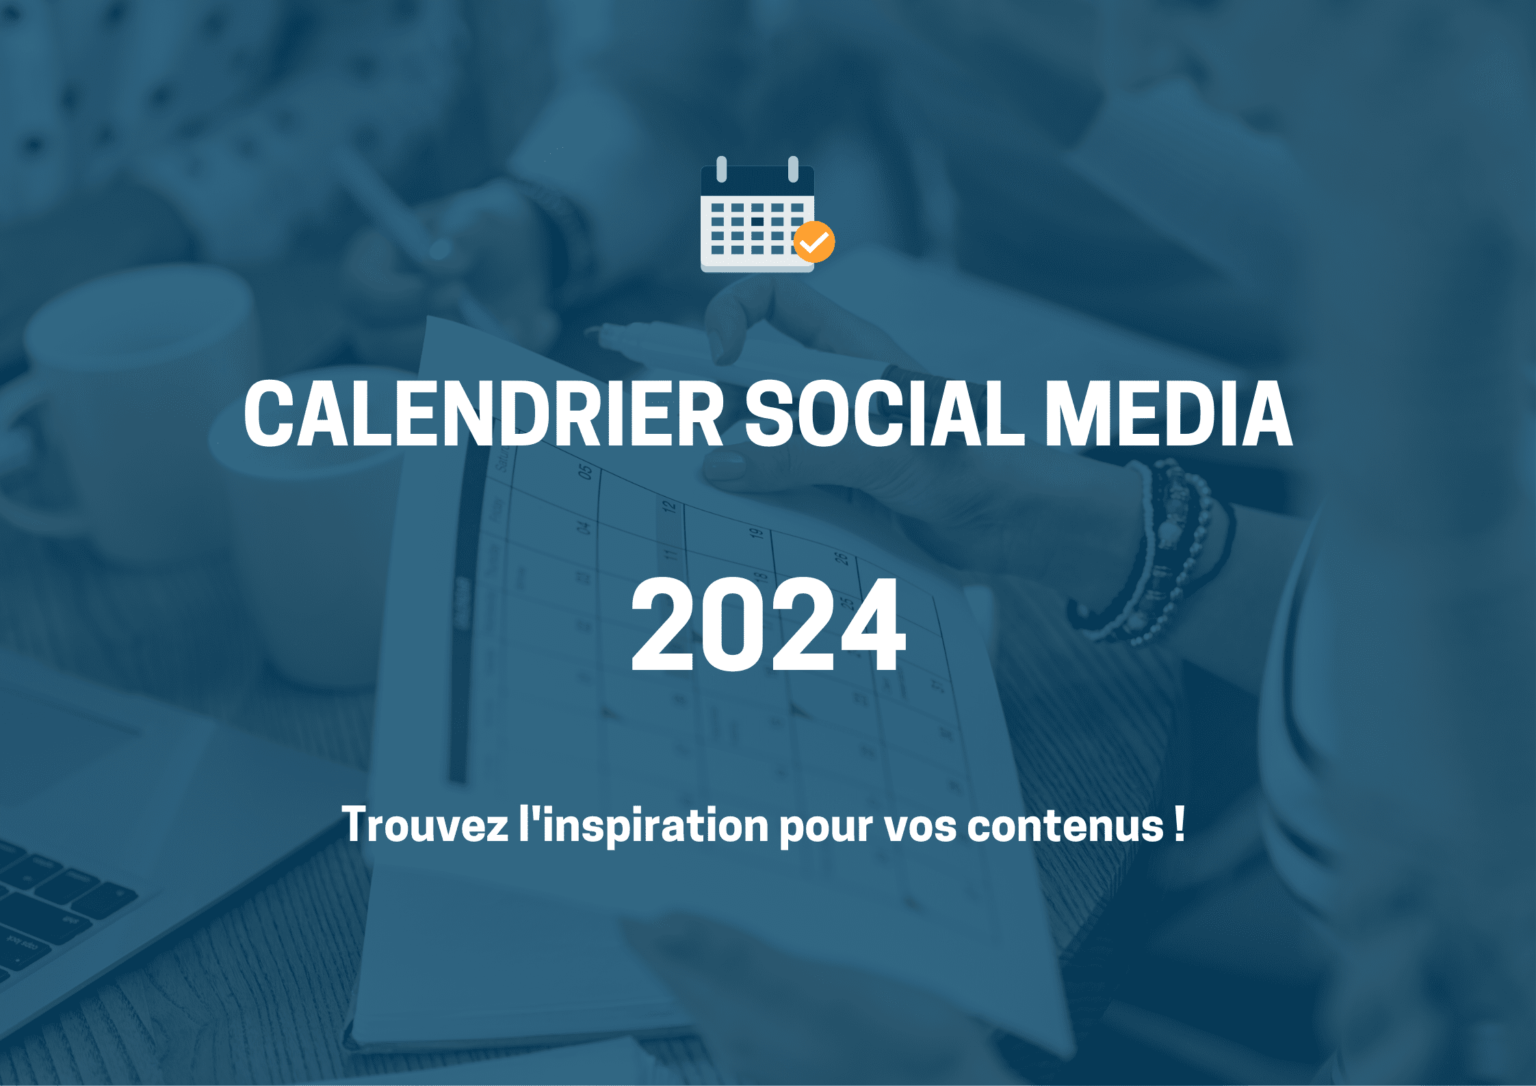 calendrier-social-media-2024-inspirations-de-contenu-reseaux-sociaux-sarah-berclaz